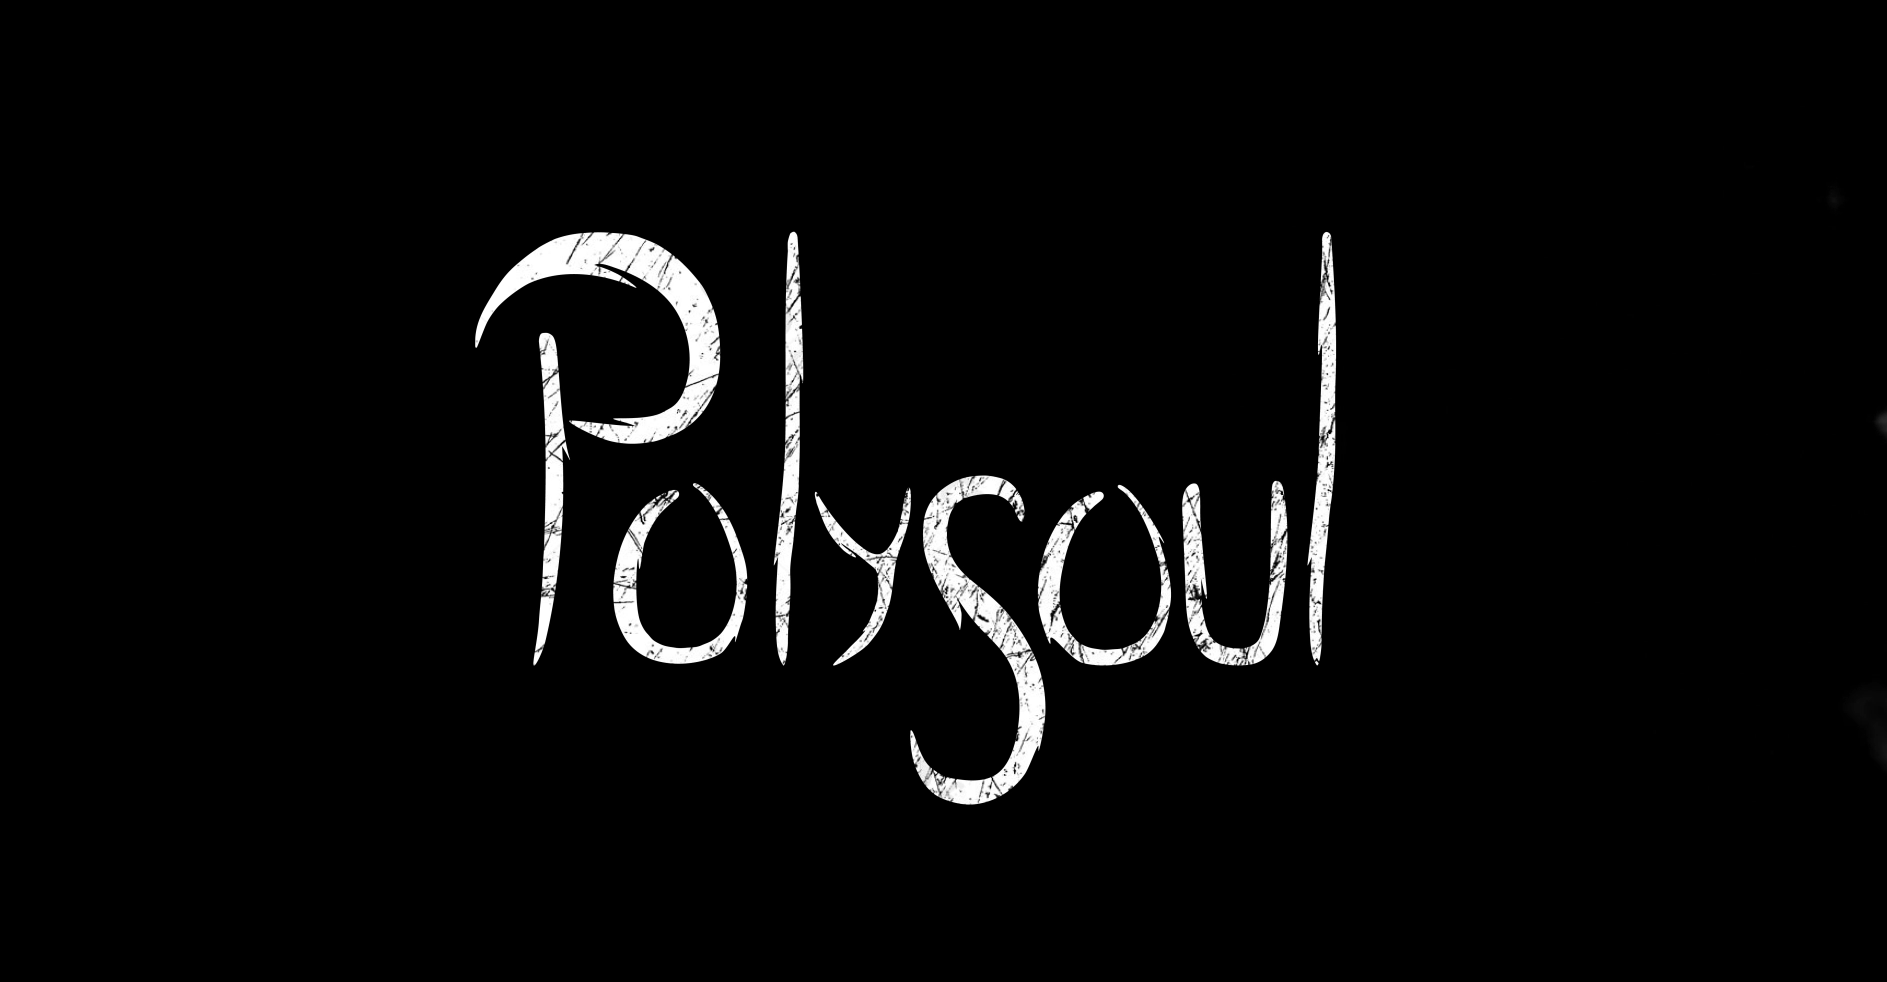 Polysoul